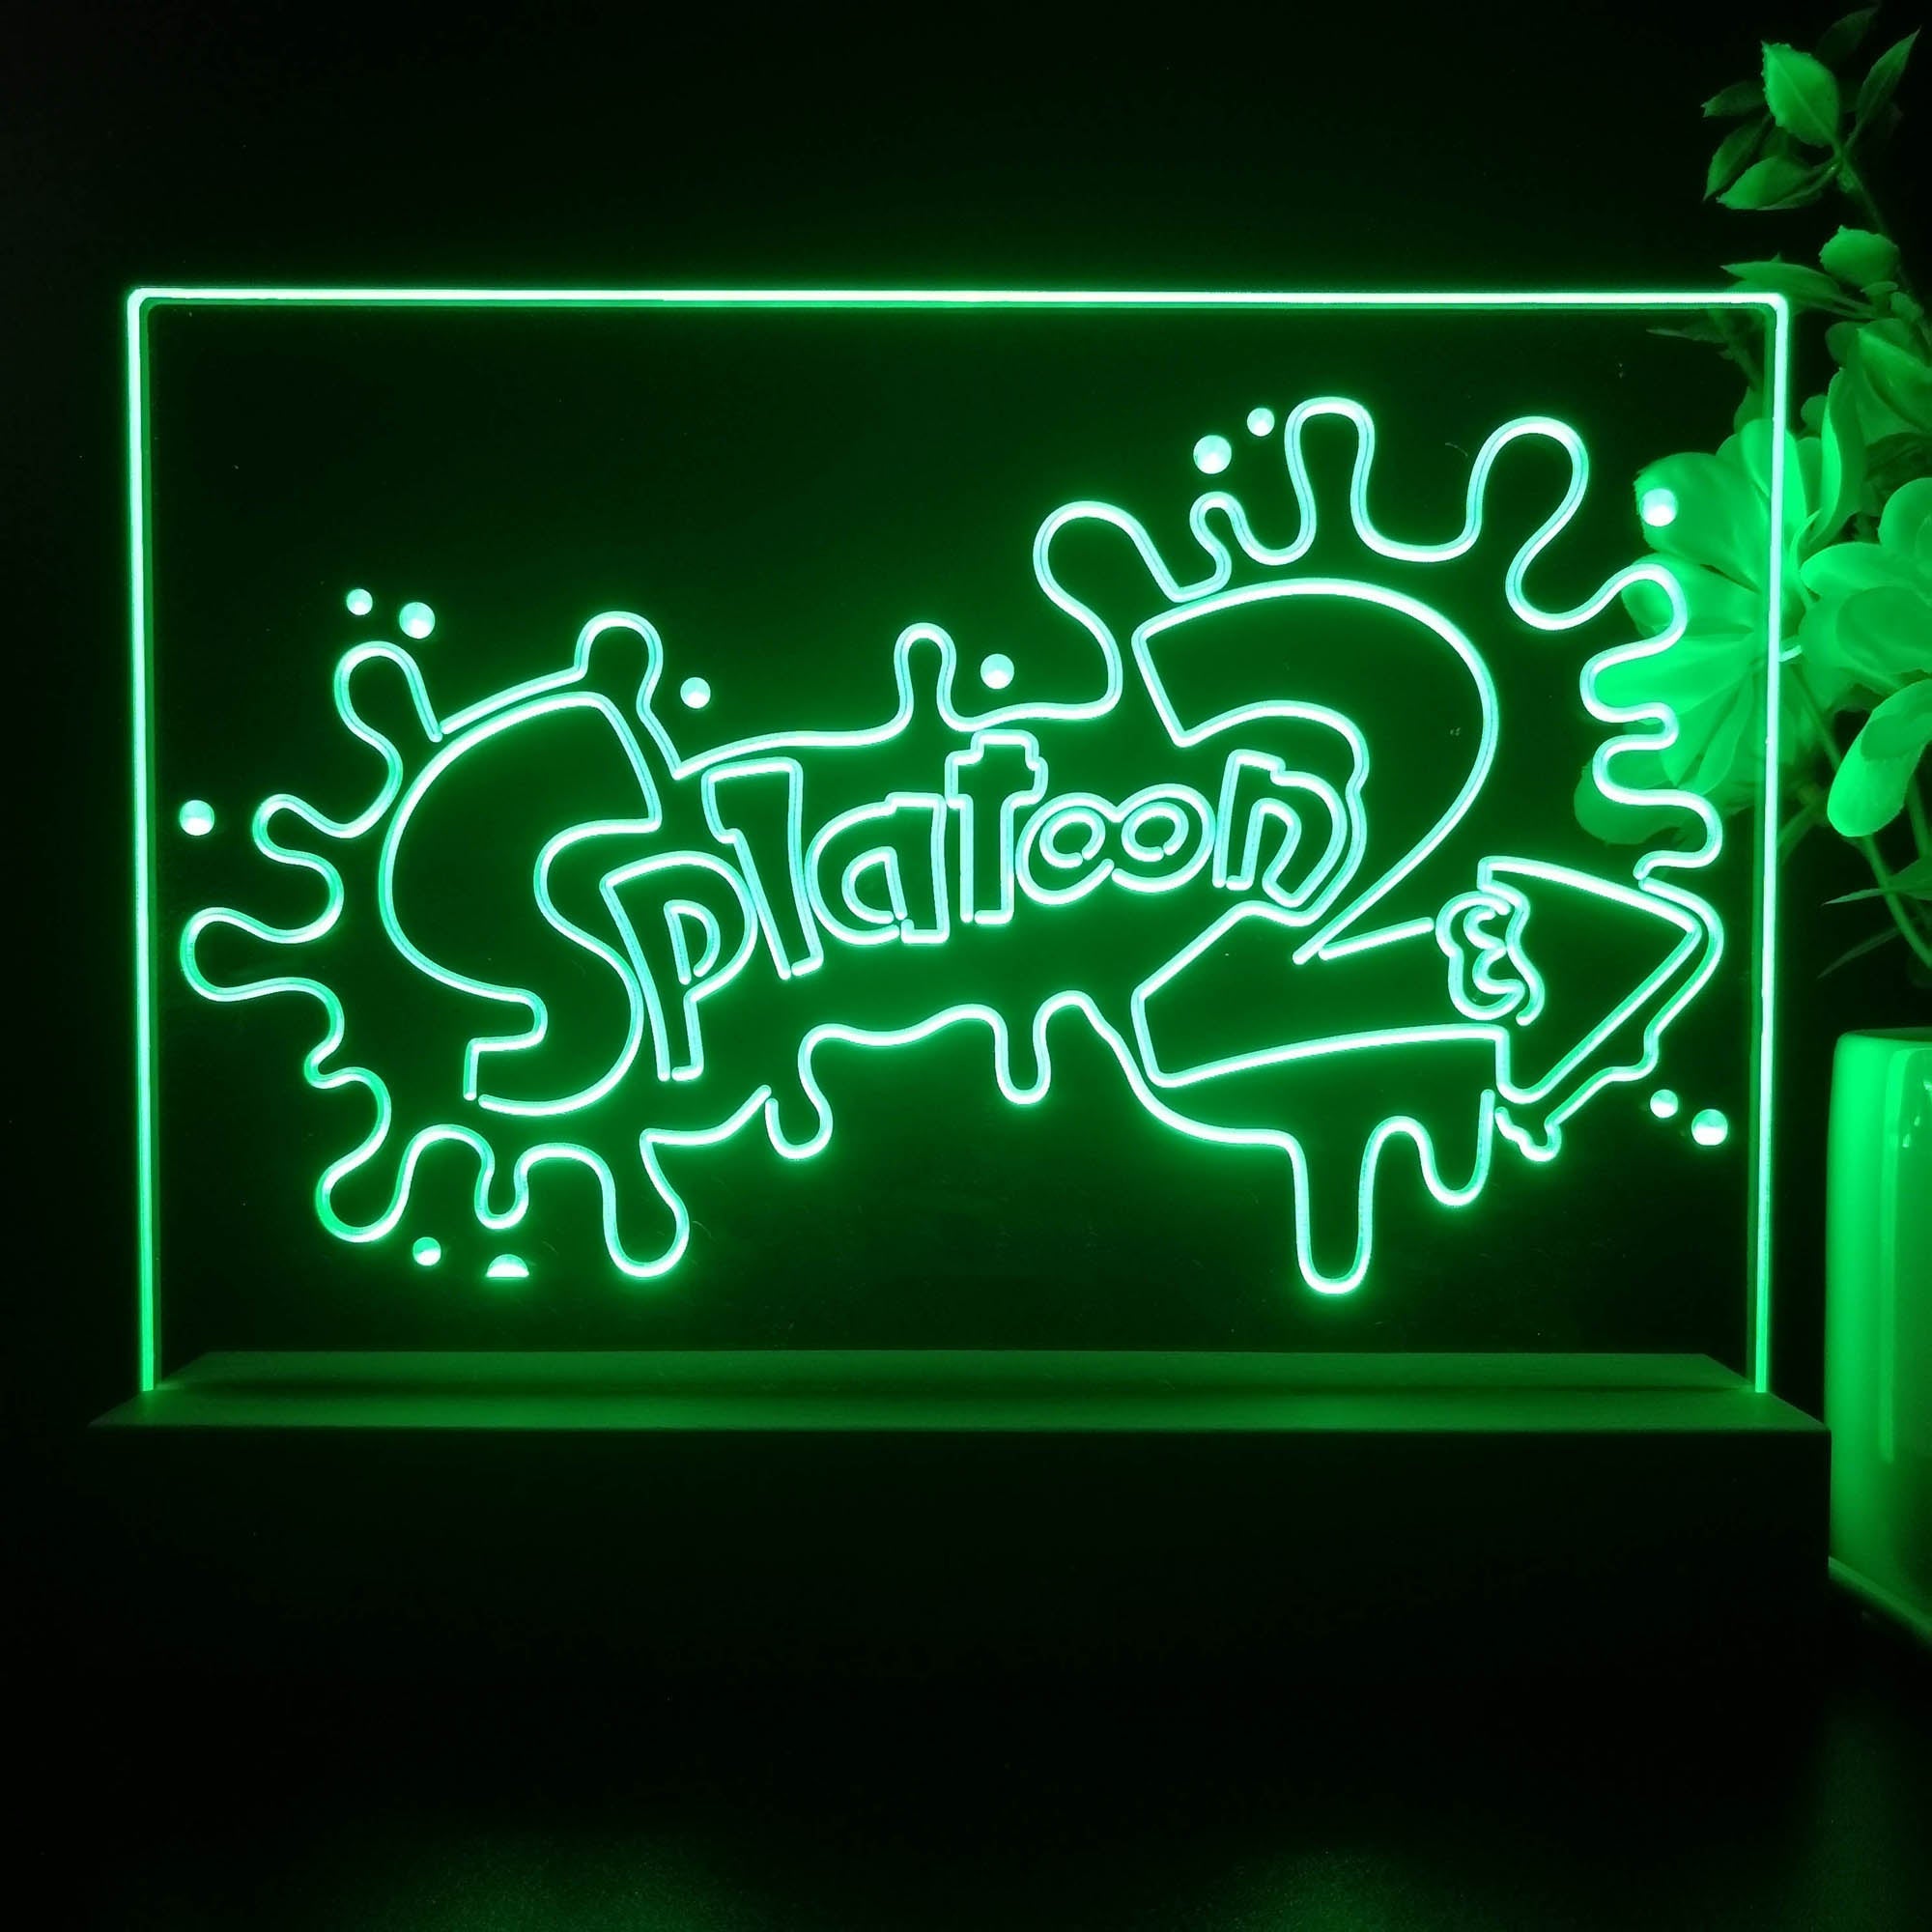 Splatoon 2 Neon Sign Game Room Lamp